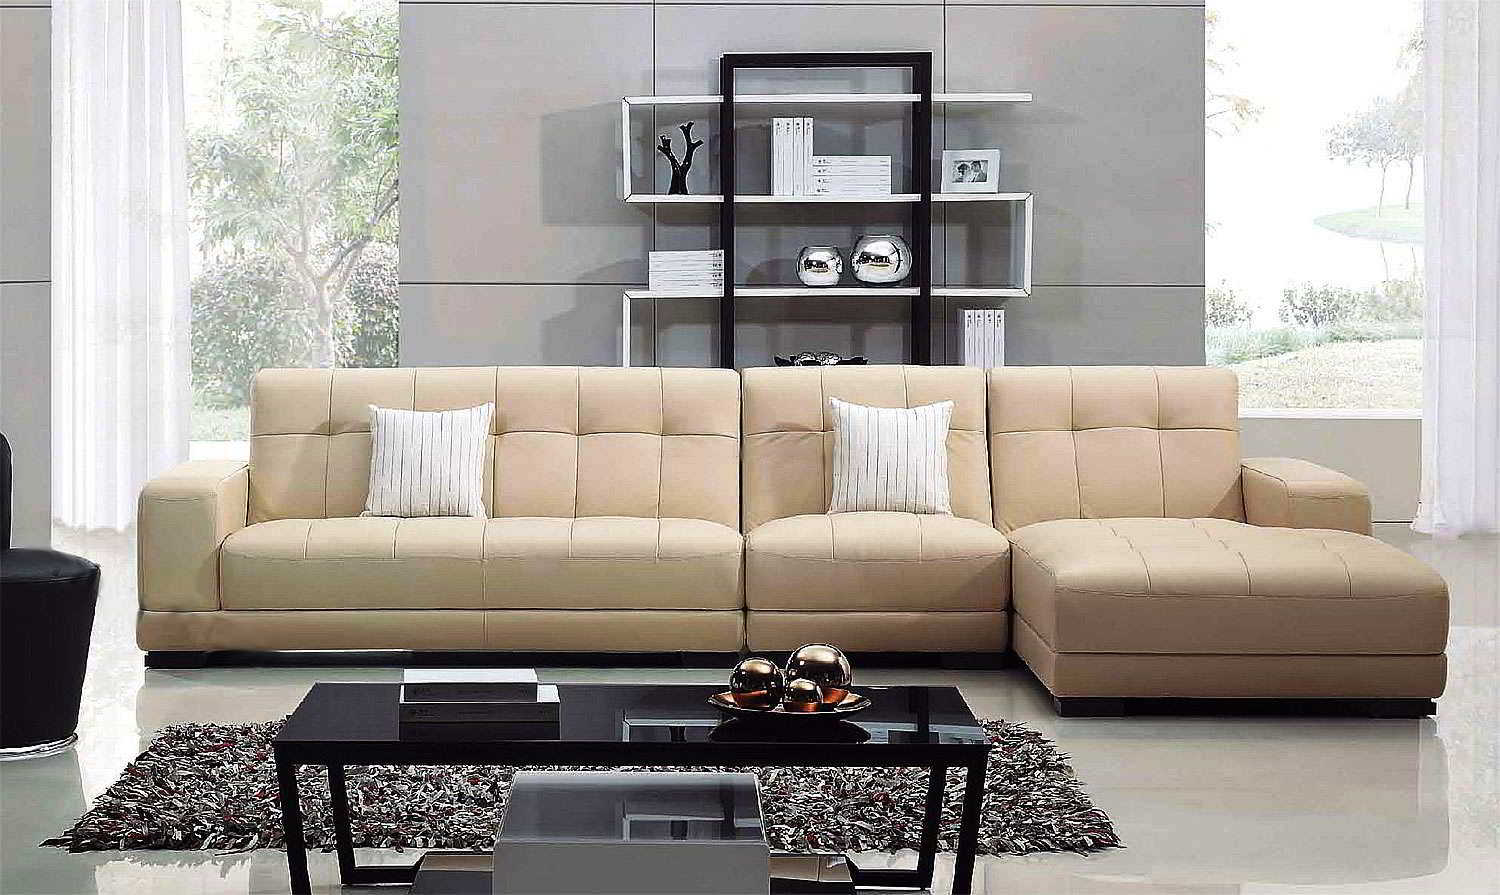  Model  Sofa  Ruang Keluarga Minimalis  Desain Rumah